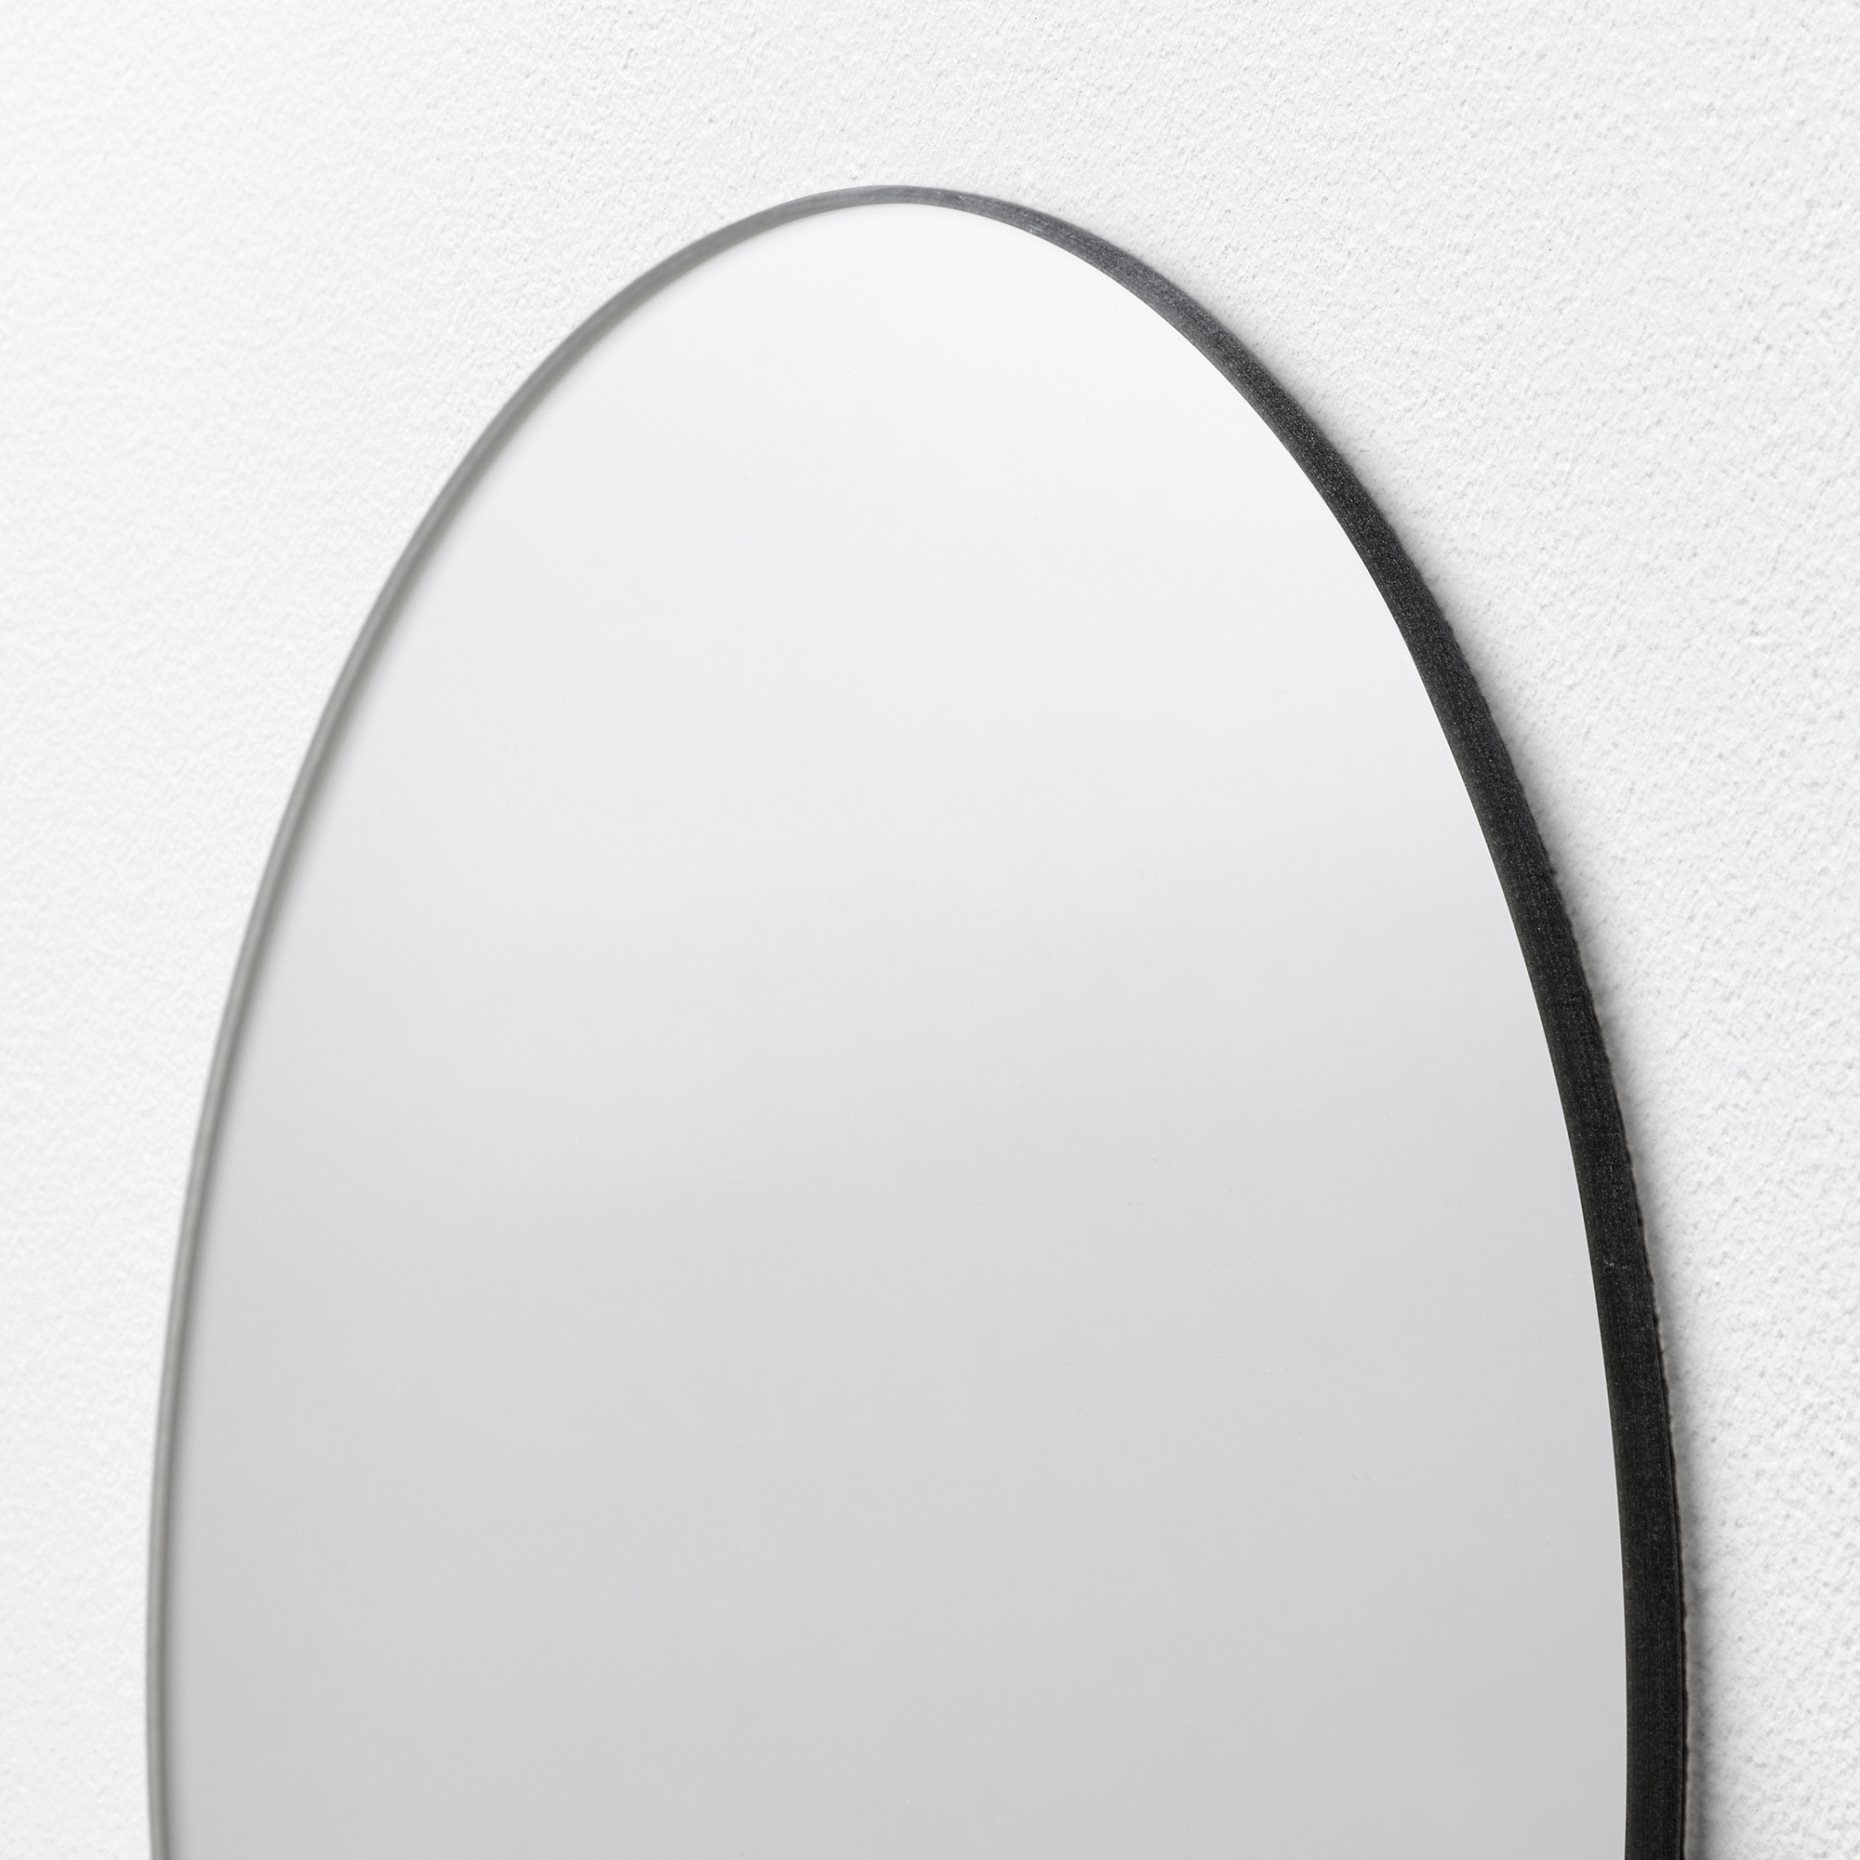 FÄRGEK, декоративно огледало, 20 см, 005.171.21